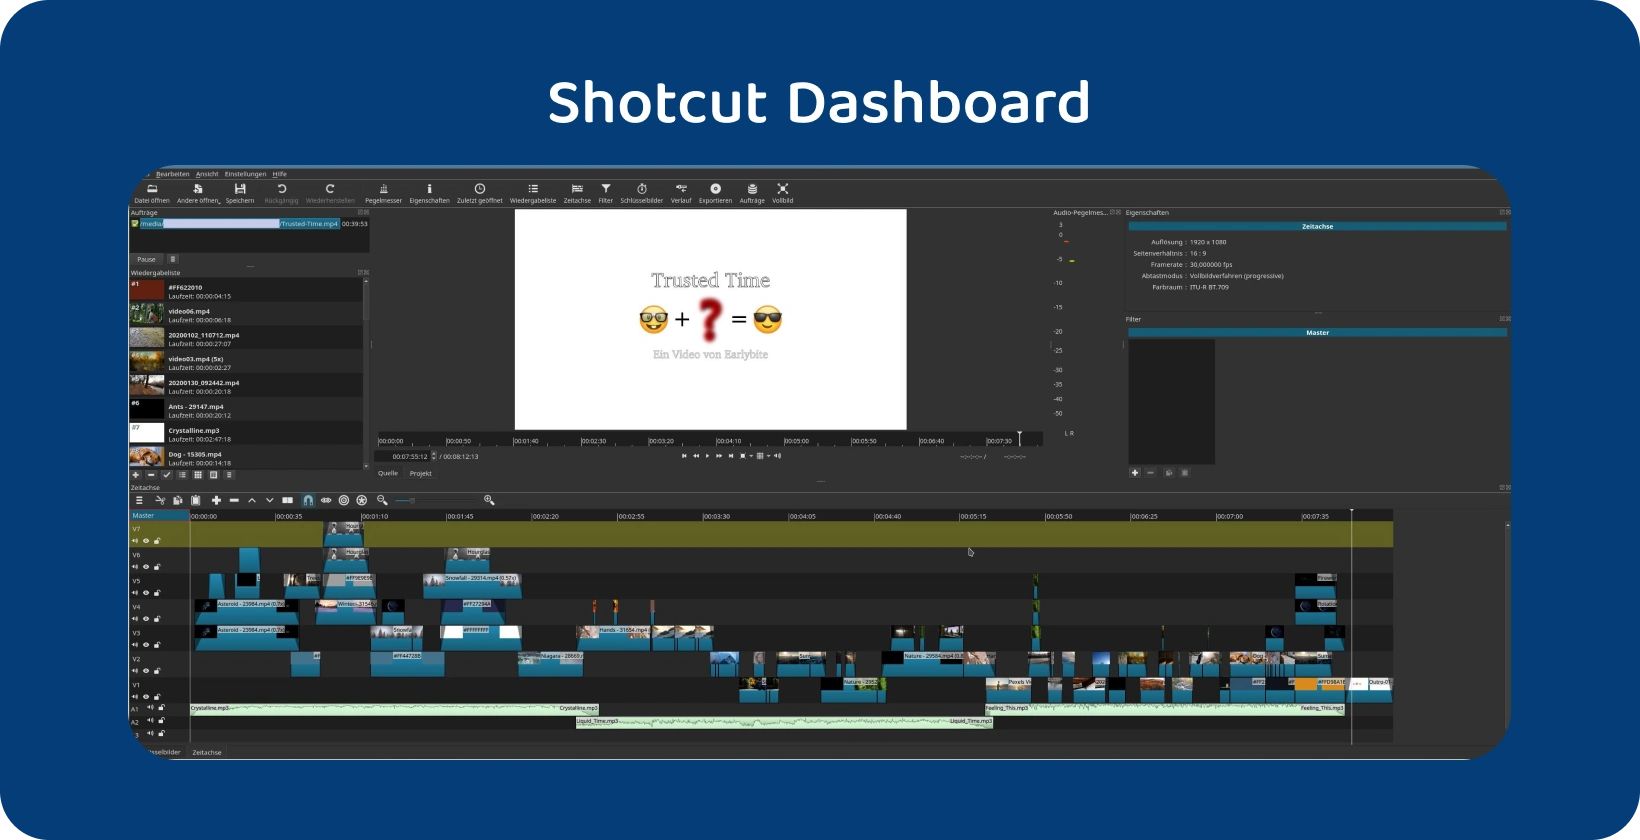 Software pro úpravu videa Shotcut zobrazení složité časové osy s více stopami, což naznačuje pokročilý projekt.